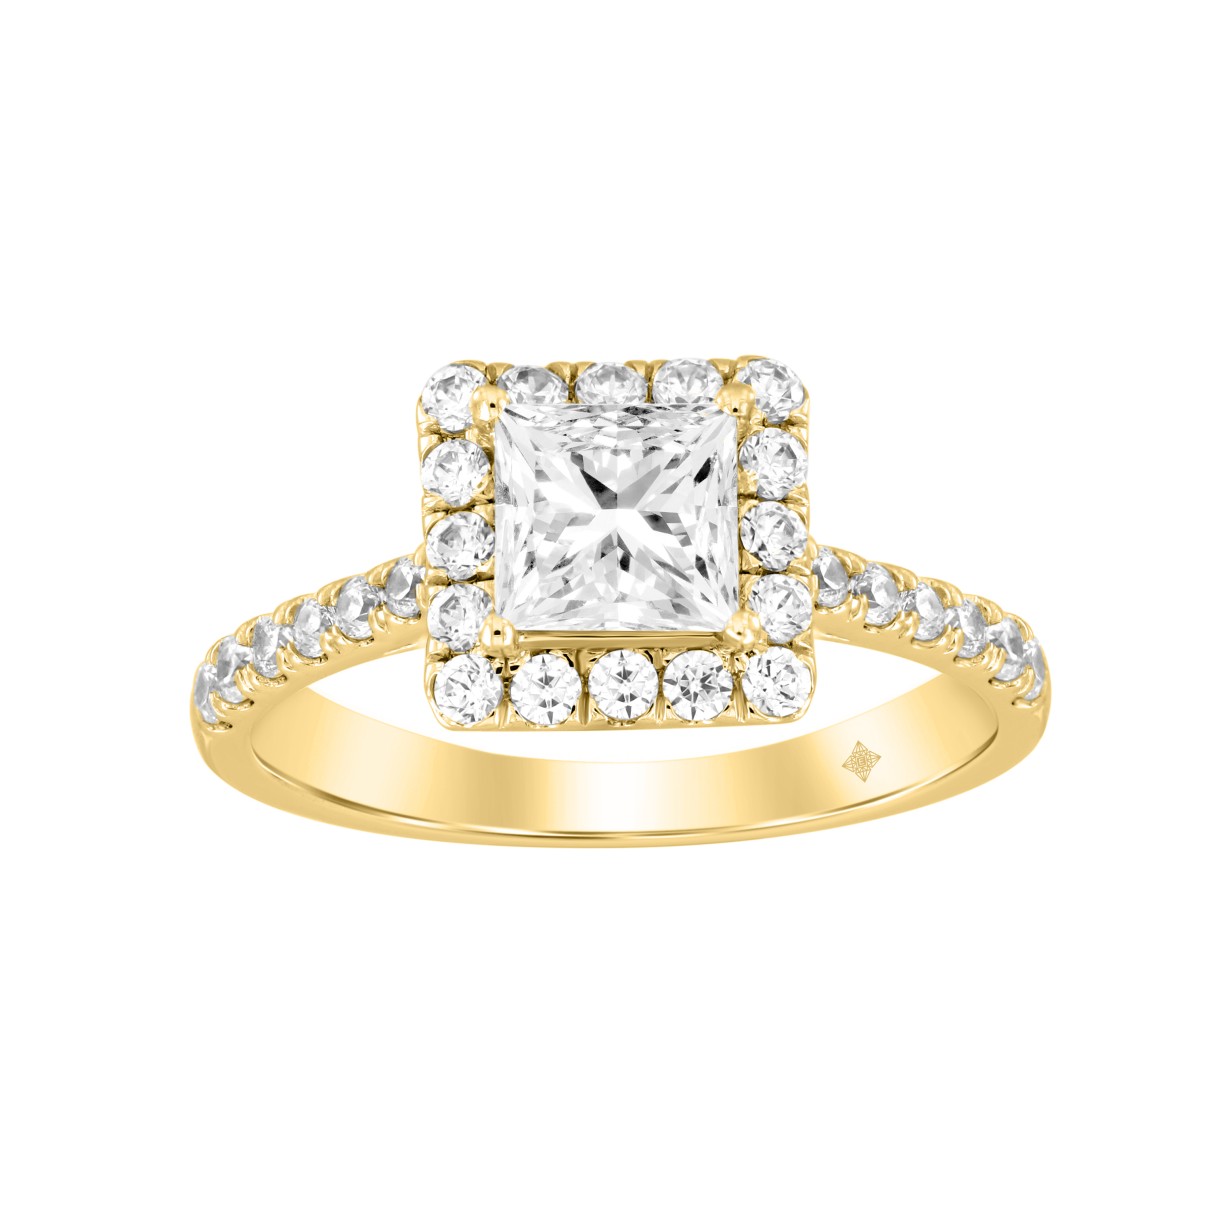 LADIES RING 1 1/2CT ROUND/PRINCESS DIAMOND 14K YELLOW GOLD (CENTER STONE PRINCESS DIAMOND 1CT)